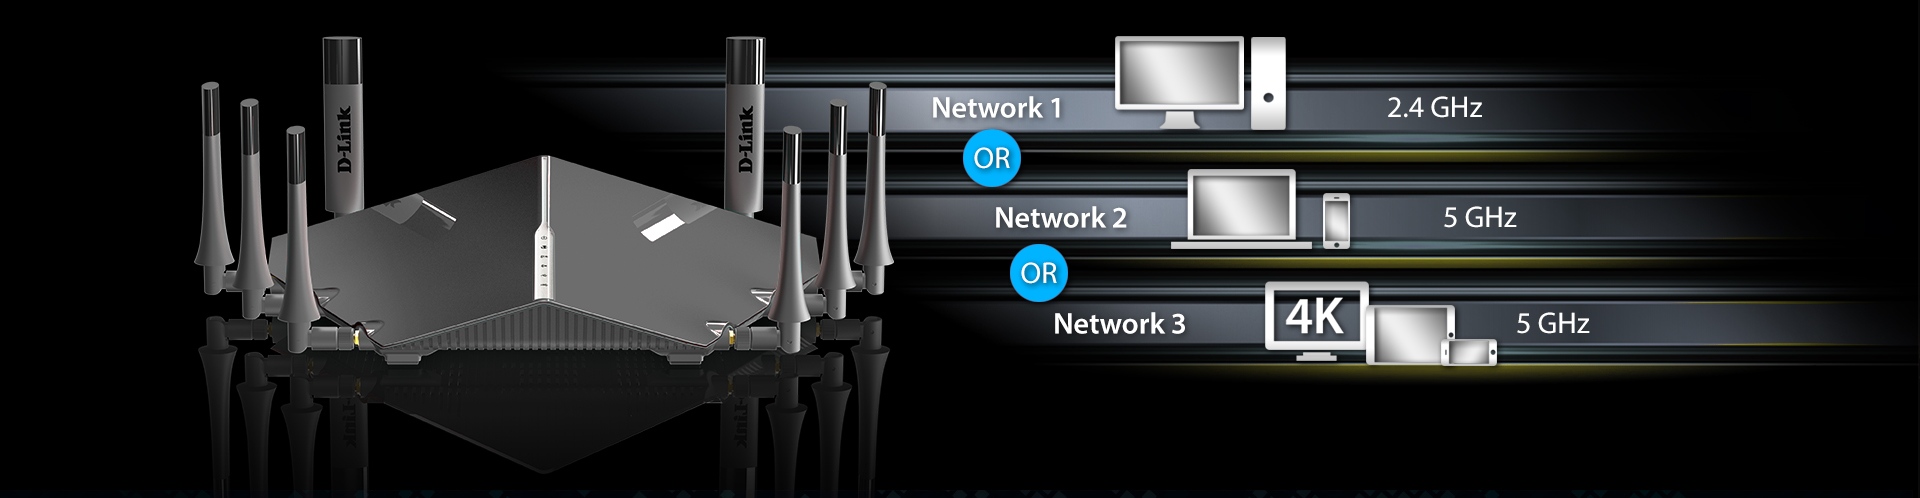 DIR-895L-Grey-network